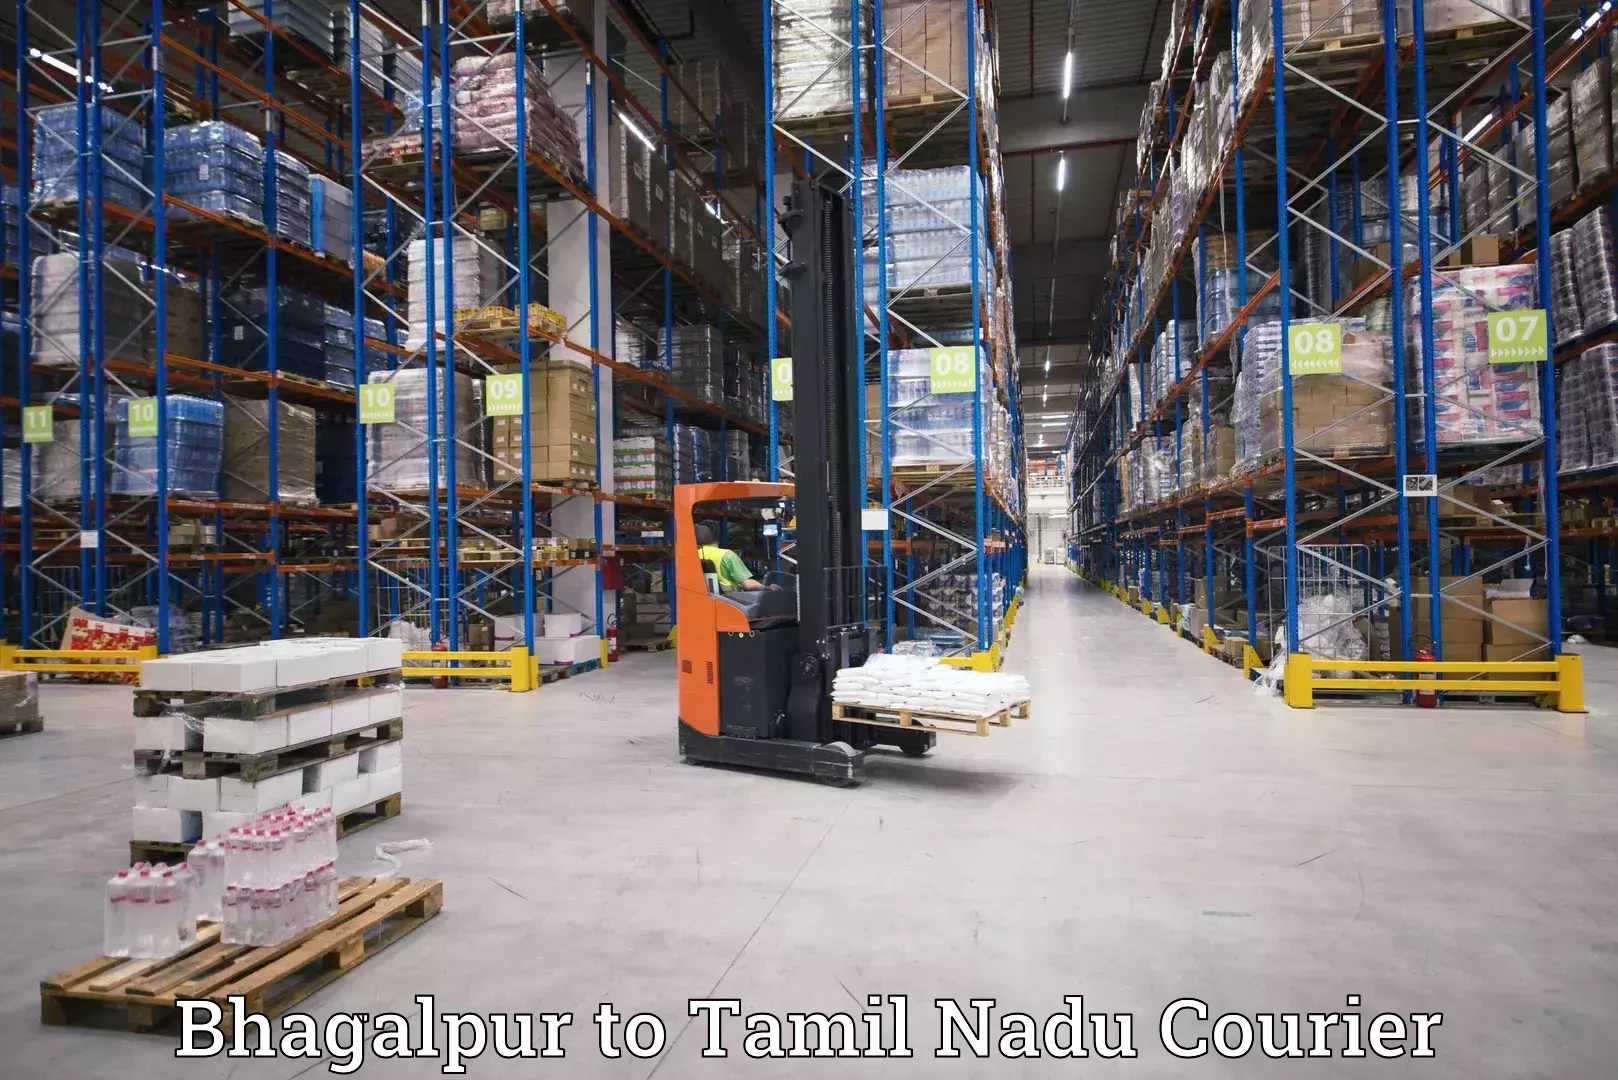 Nationwide courier service Bhagalpur to Tirunelveli